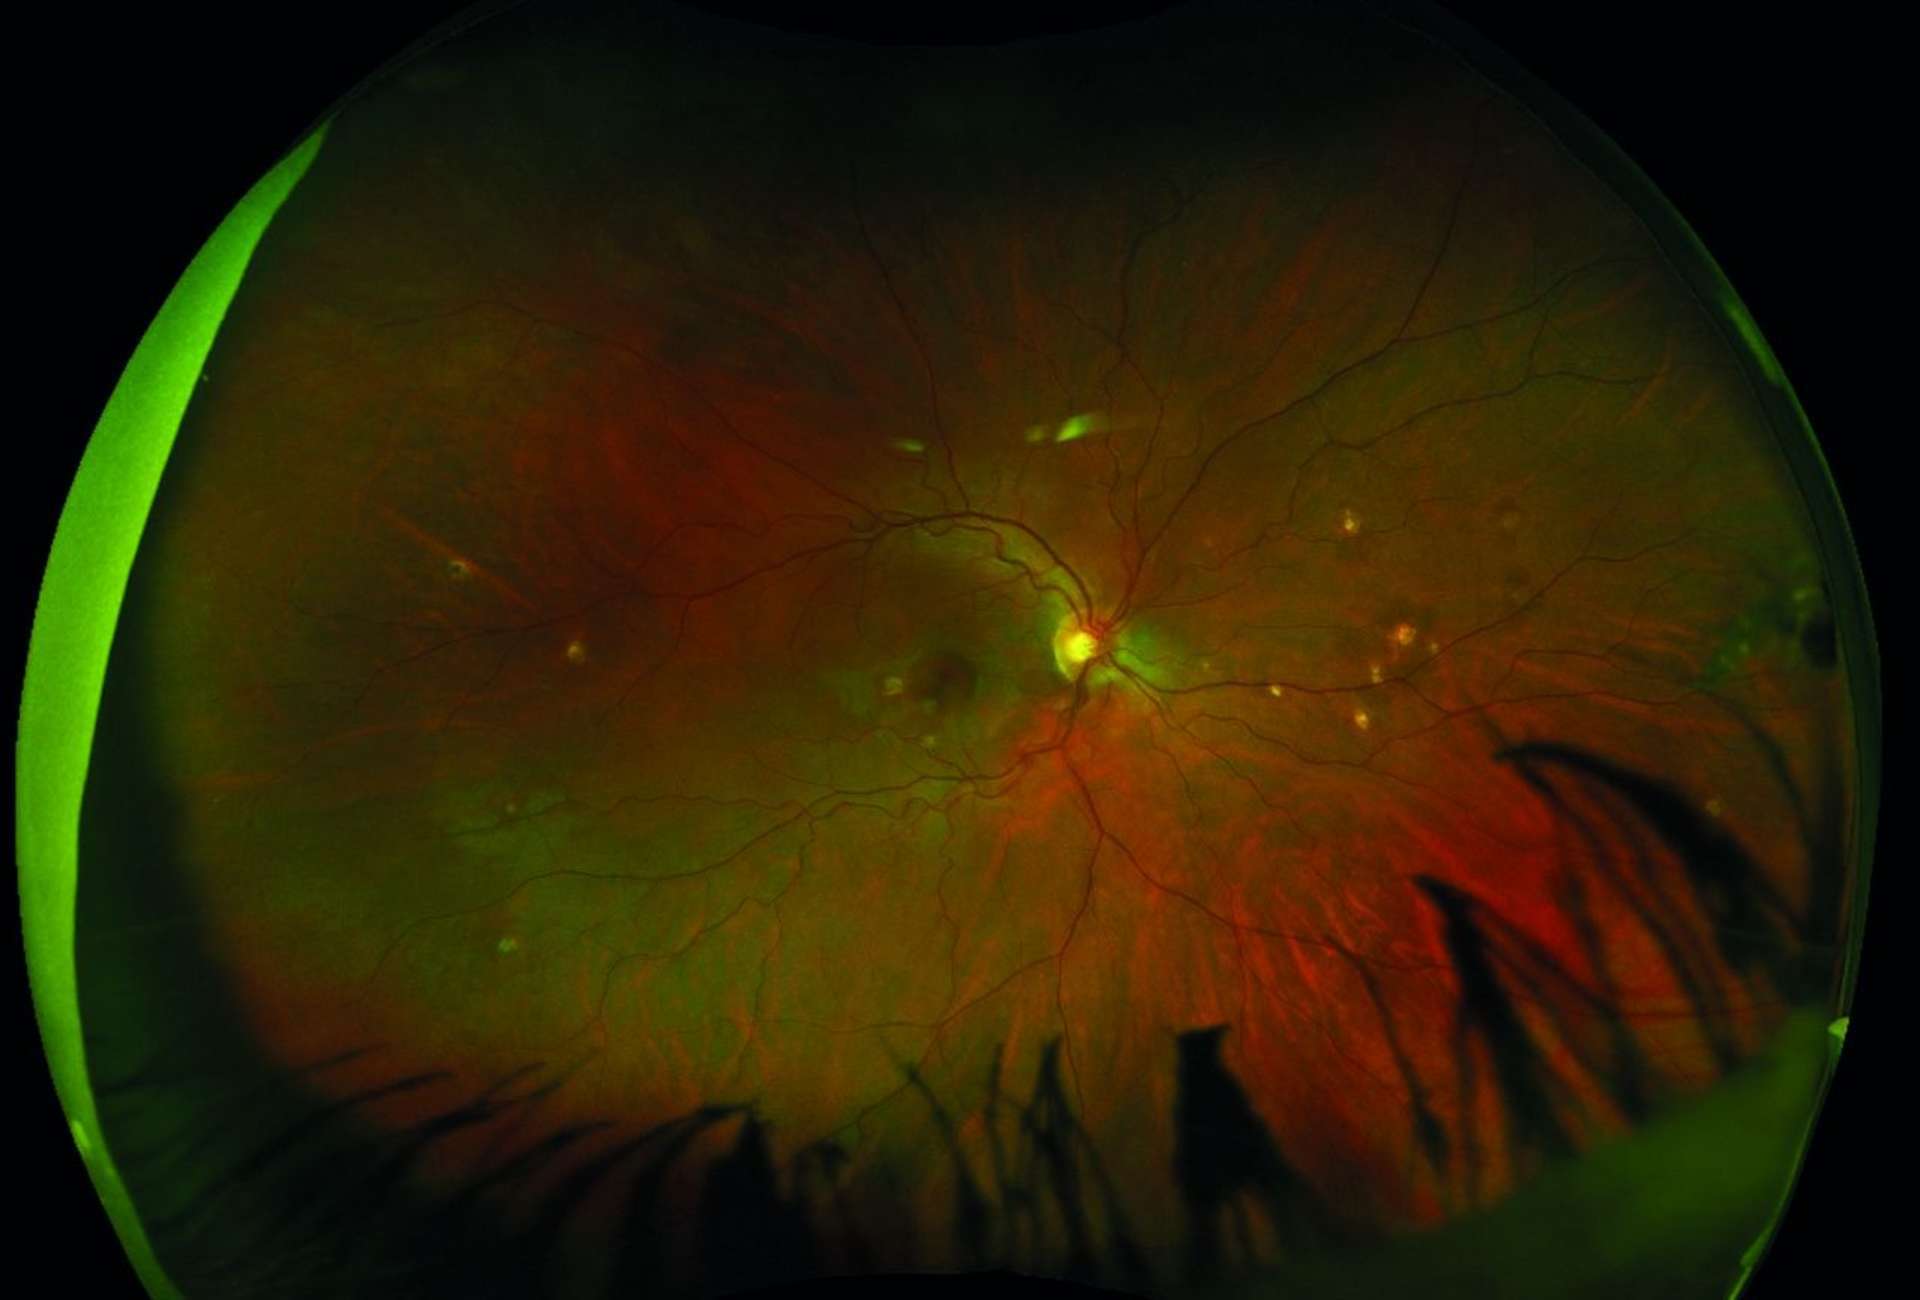 Figure 3. Photographie grand champ (Optos) du fond d’œil d’une patiente de 30 ans, montrant de multiples lésions choriorétiniennes jaunâtres en moyenne périphérie dans le cadre d’une choroïdite multifocale.
